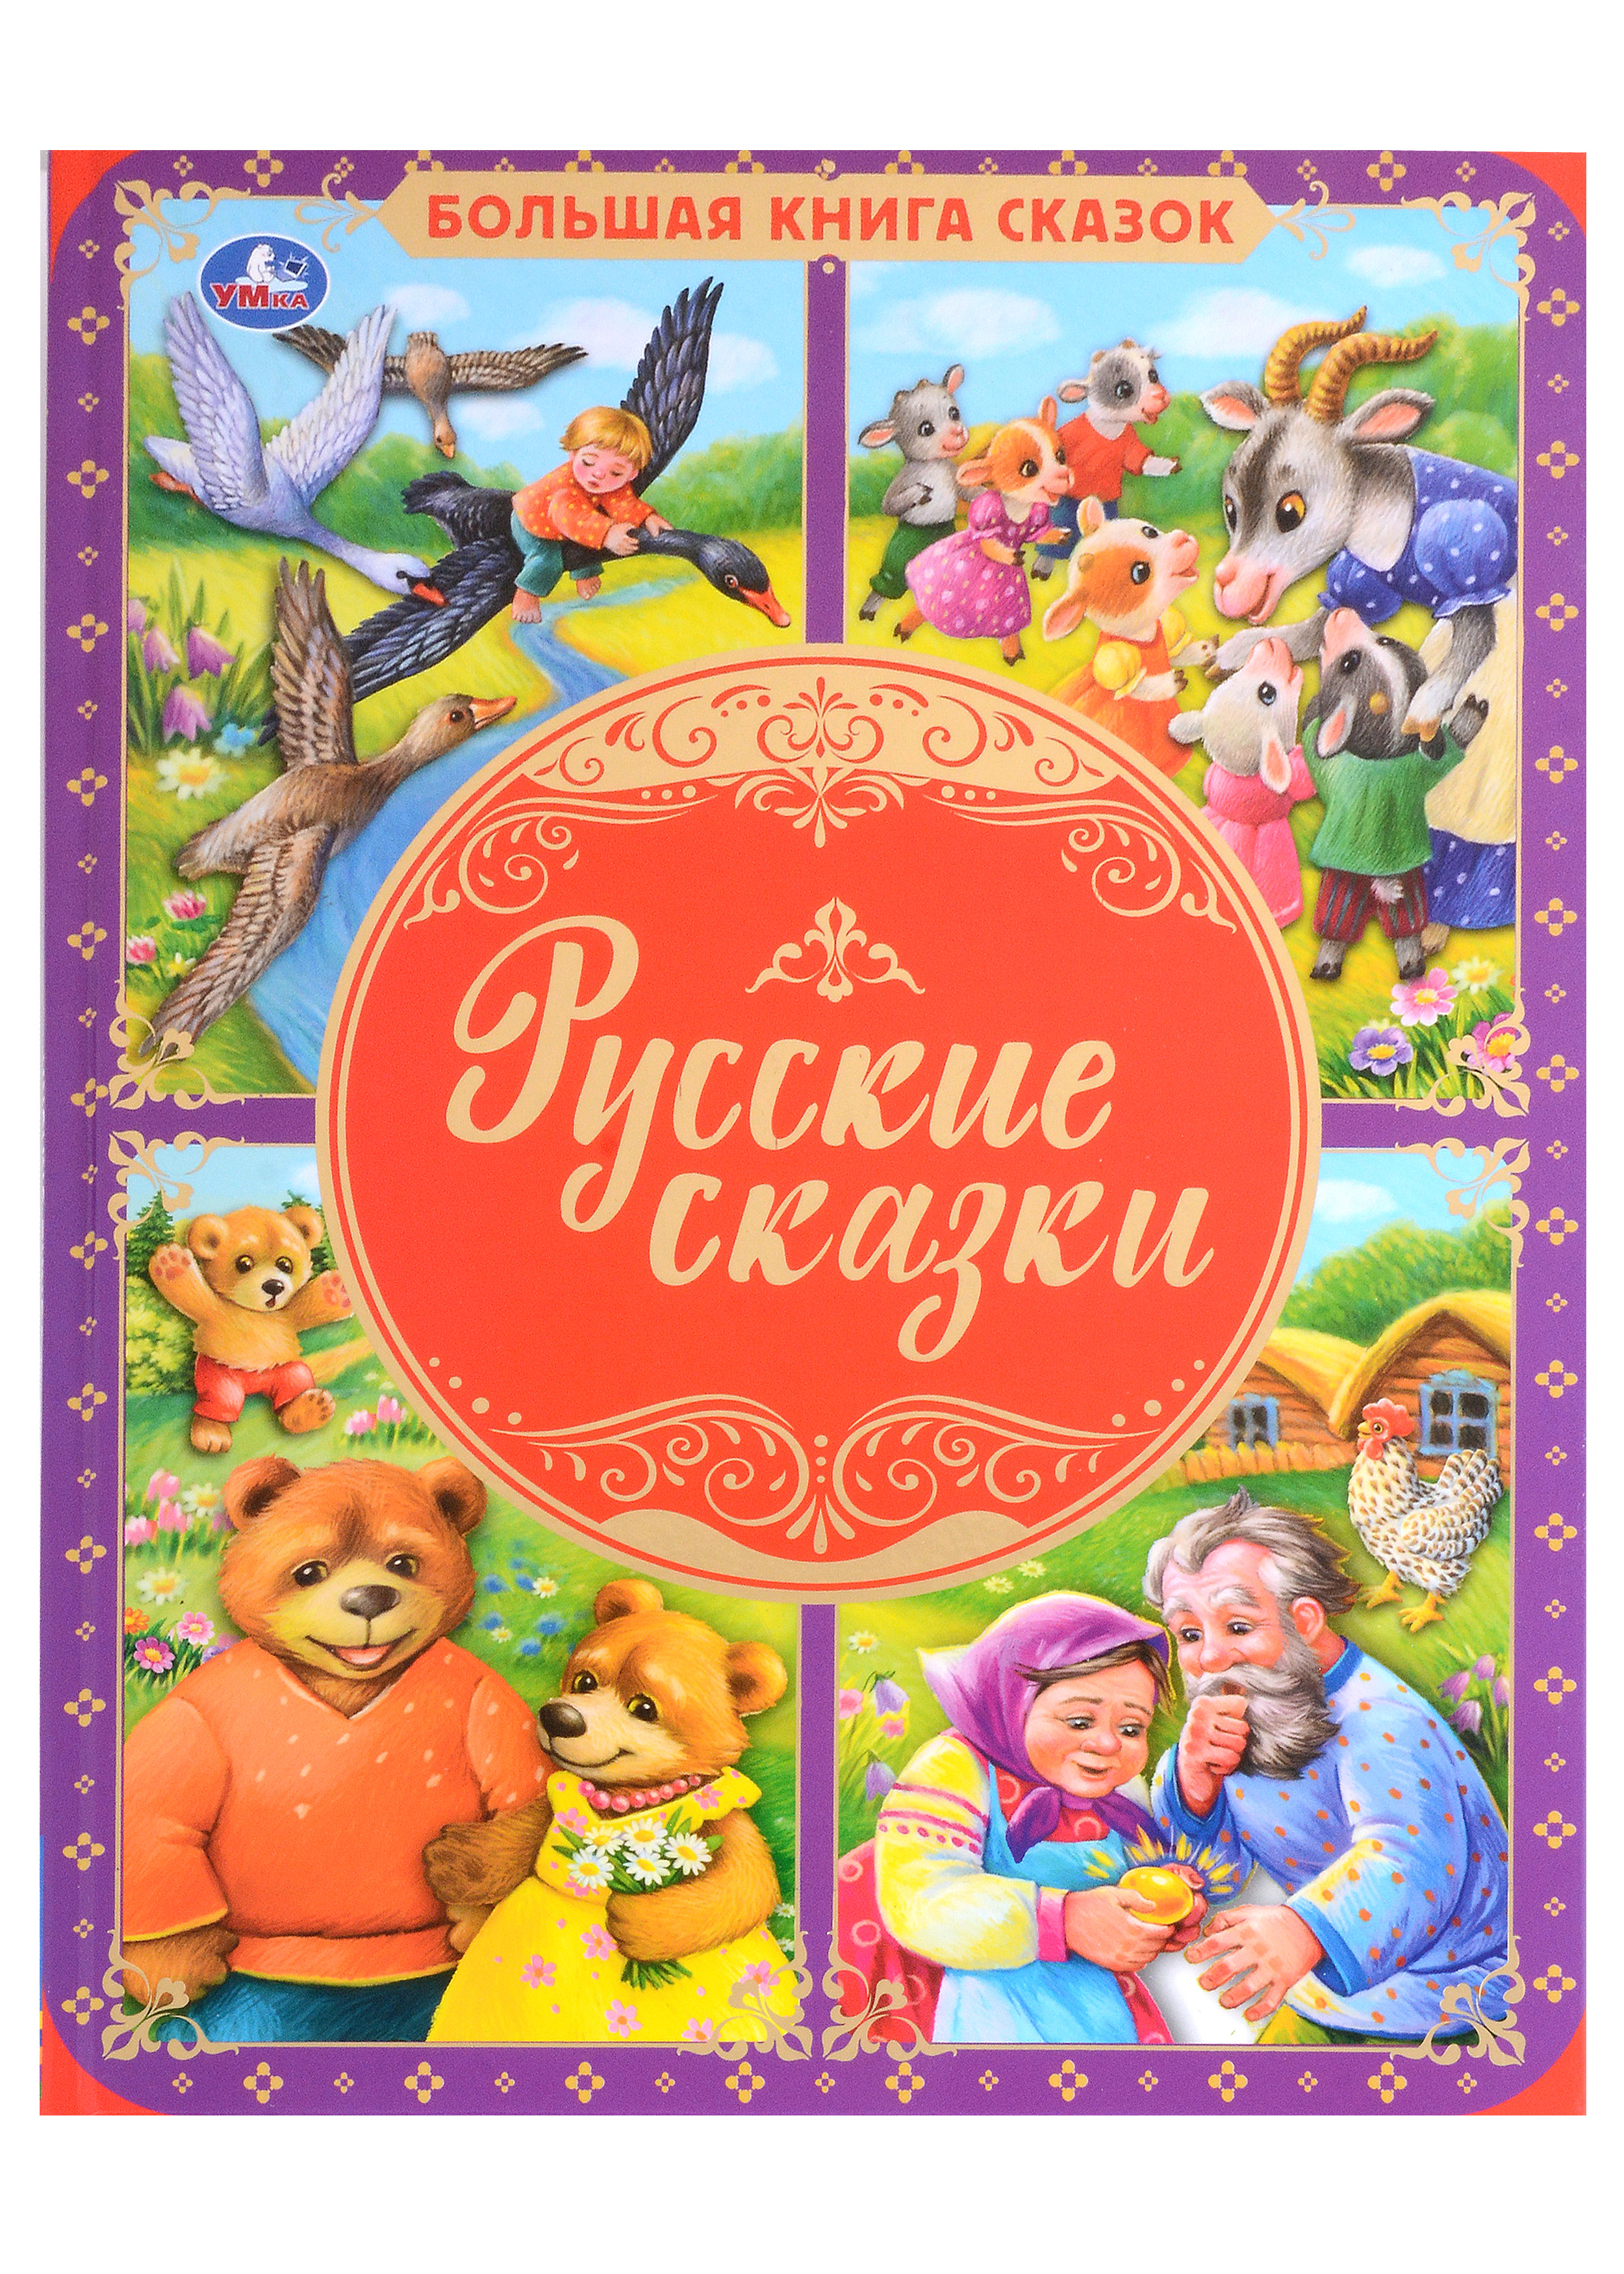 Русские сказки книга раскраска приятная коза и большой волк 10 томов